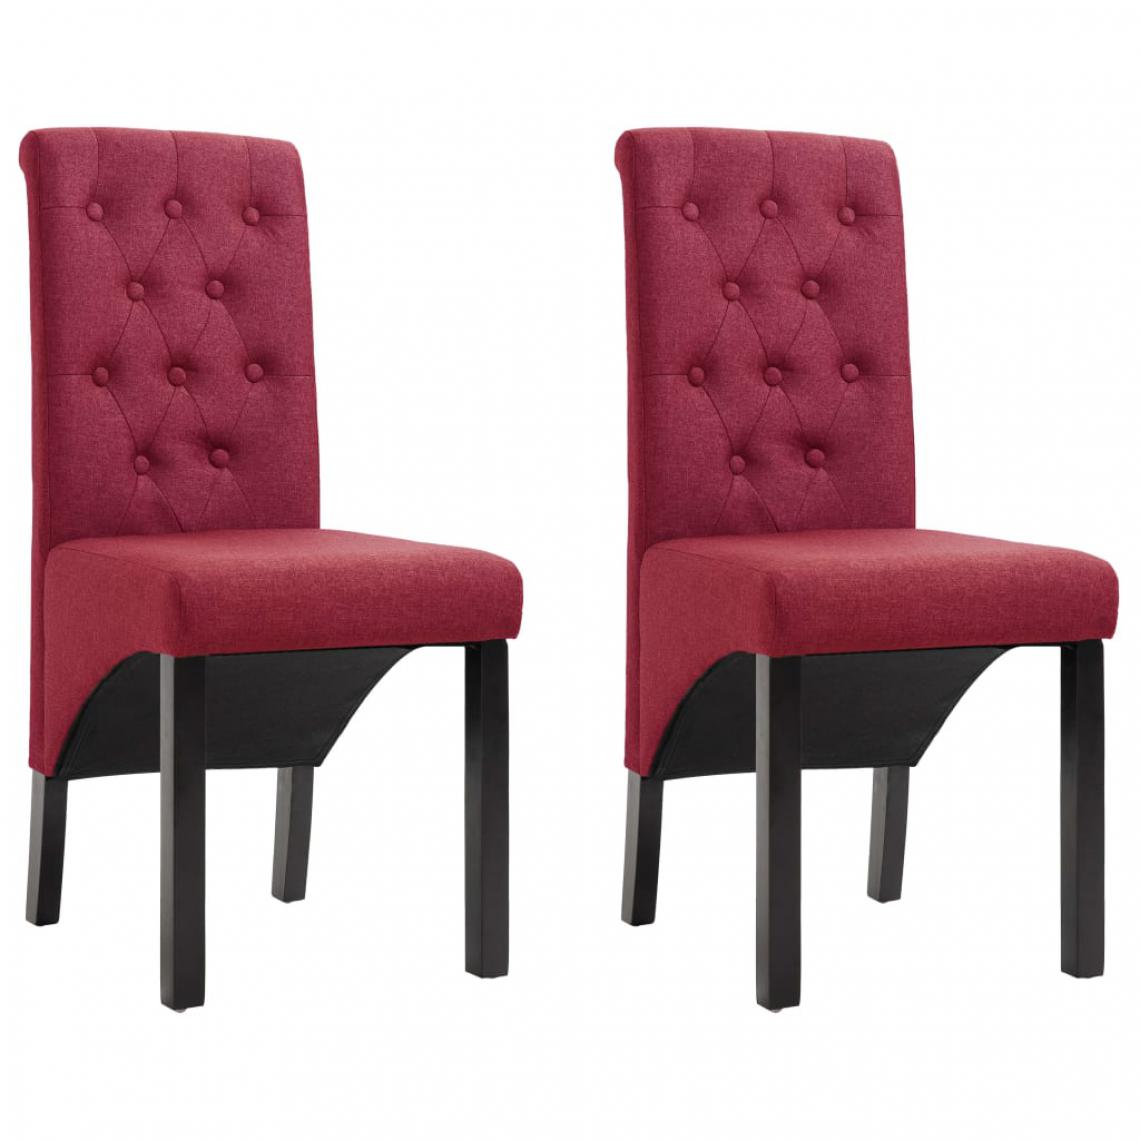 Chunhelife - Chaises de salle à manger 2 pcs Rouge bordeaux Tissu - Chaises